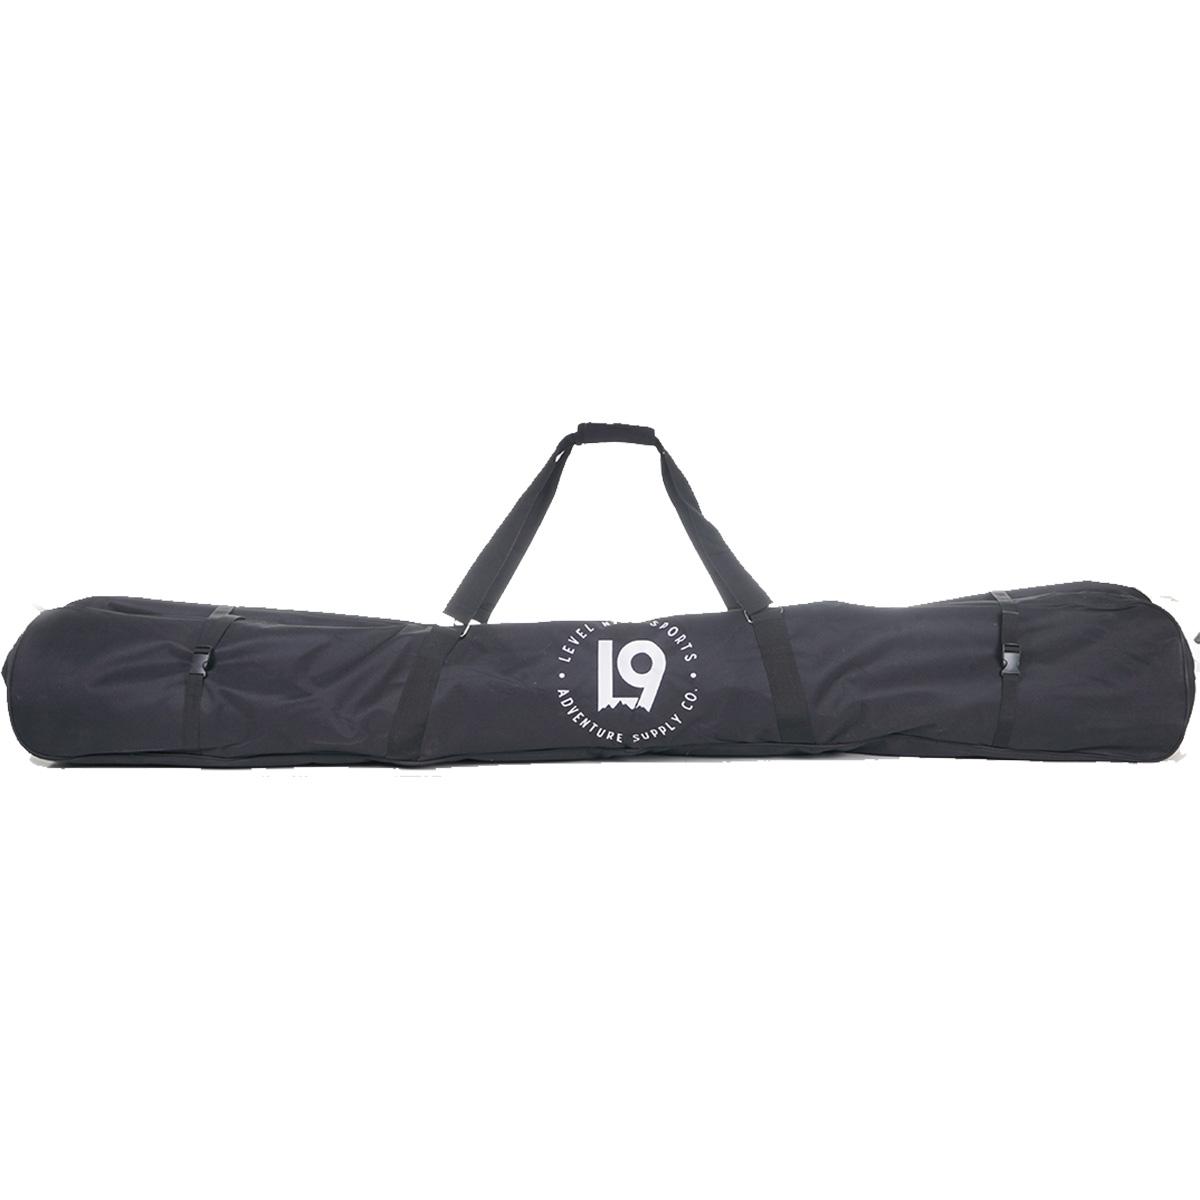 L9 Sports 190cm Ski/Snowboard Bag